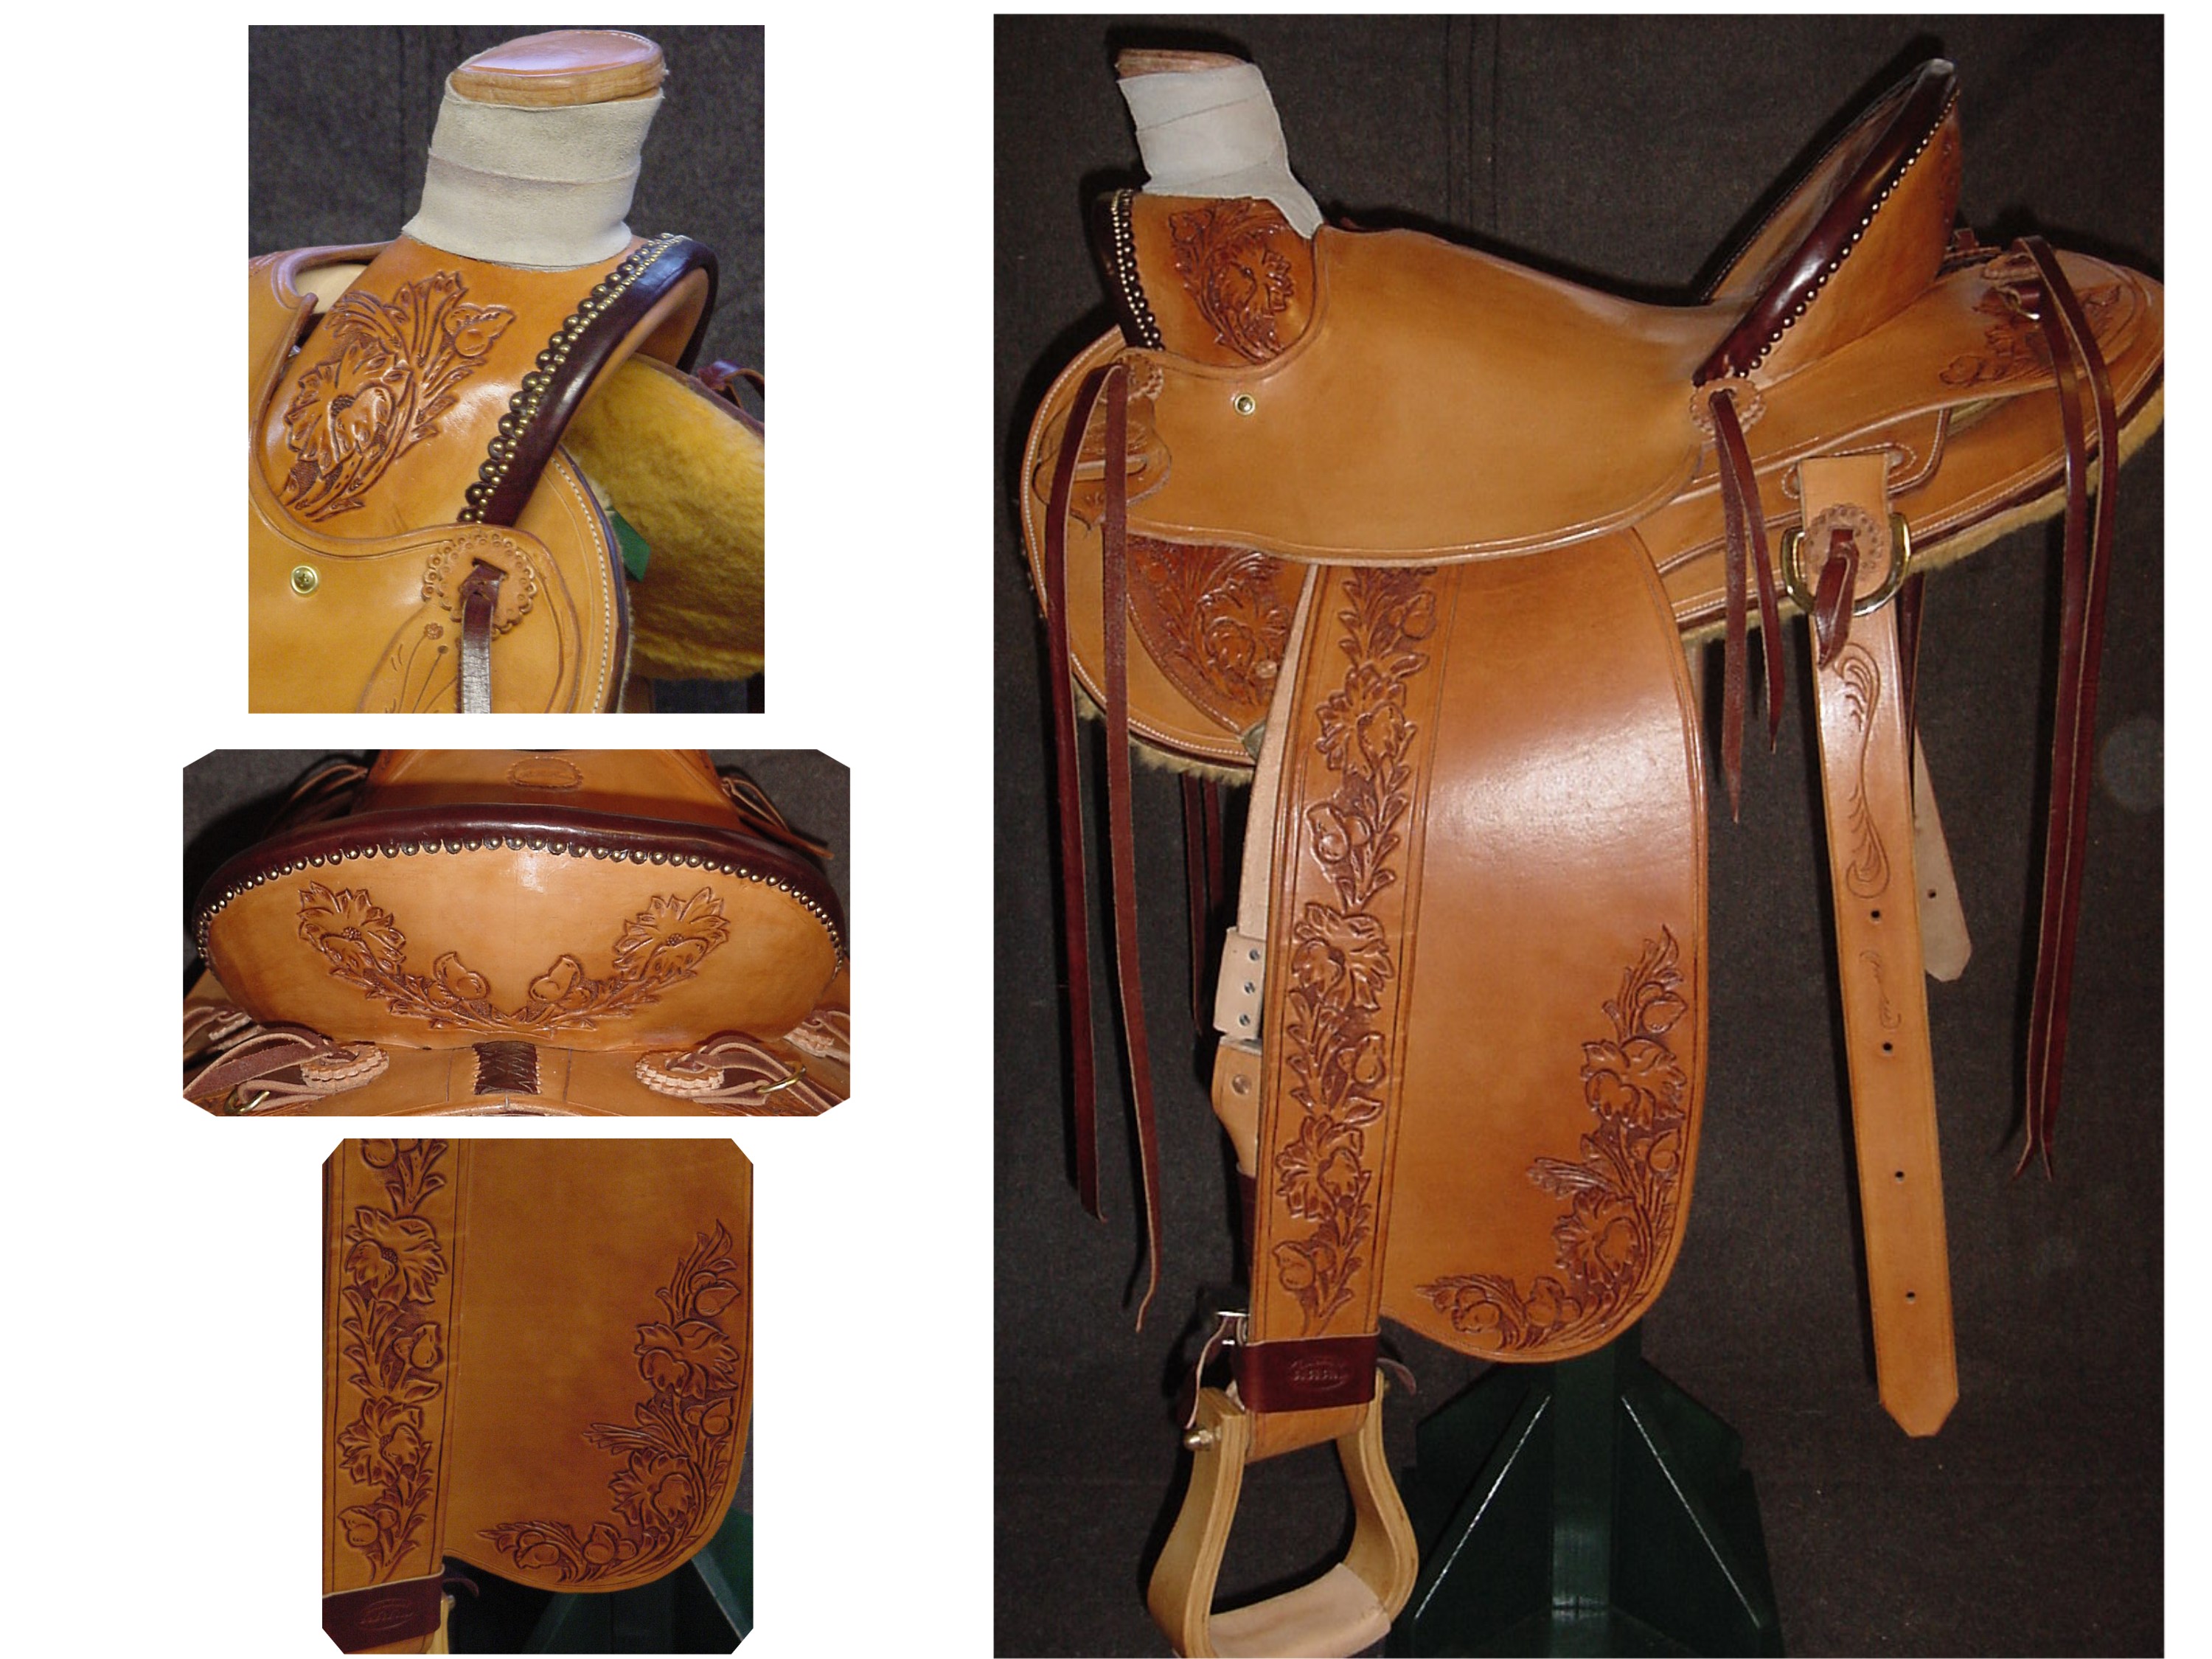 New Saddle $2495.00